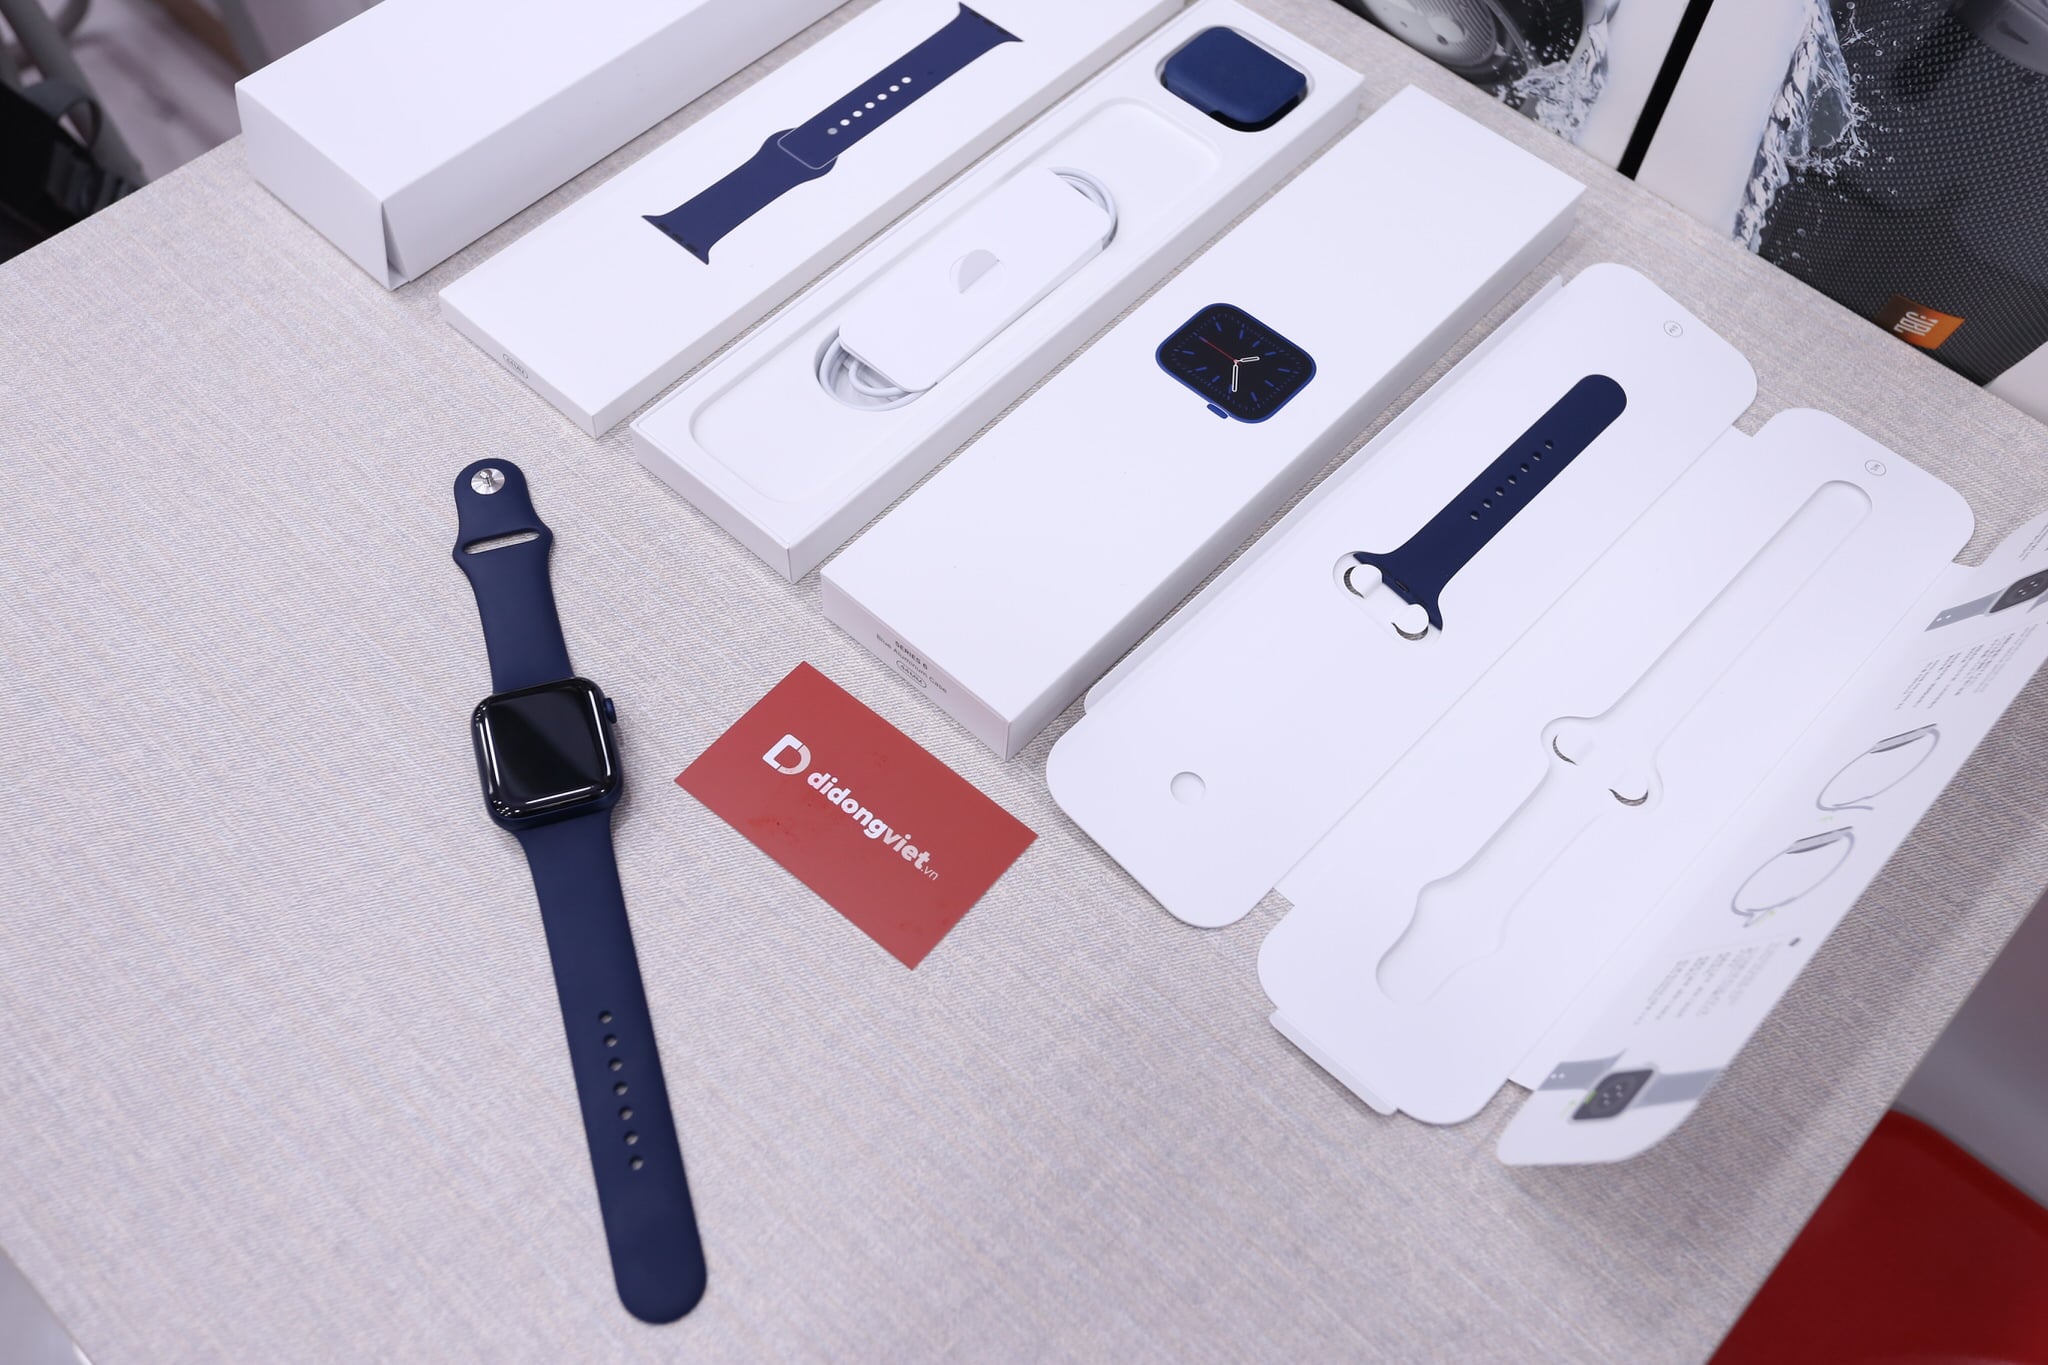 Trên tay Apple Watch Series 6 và Apple Watch SE tại Việt Nam, giá ban đầu từ 9.1 triệu